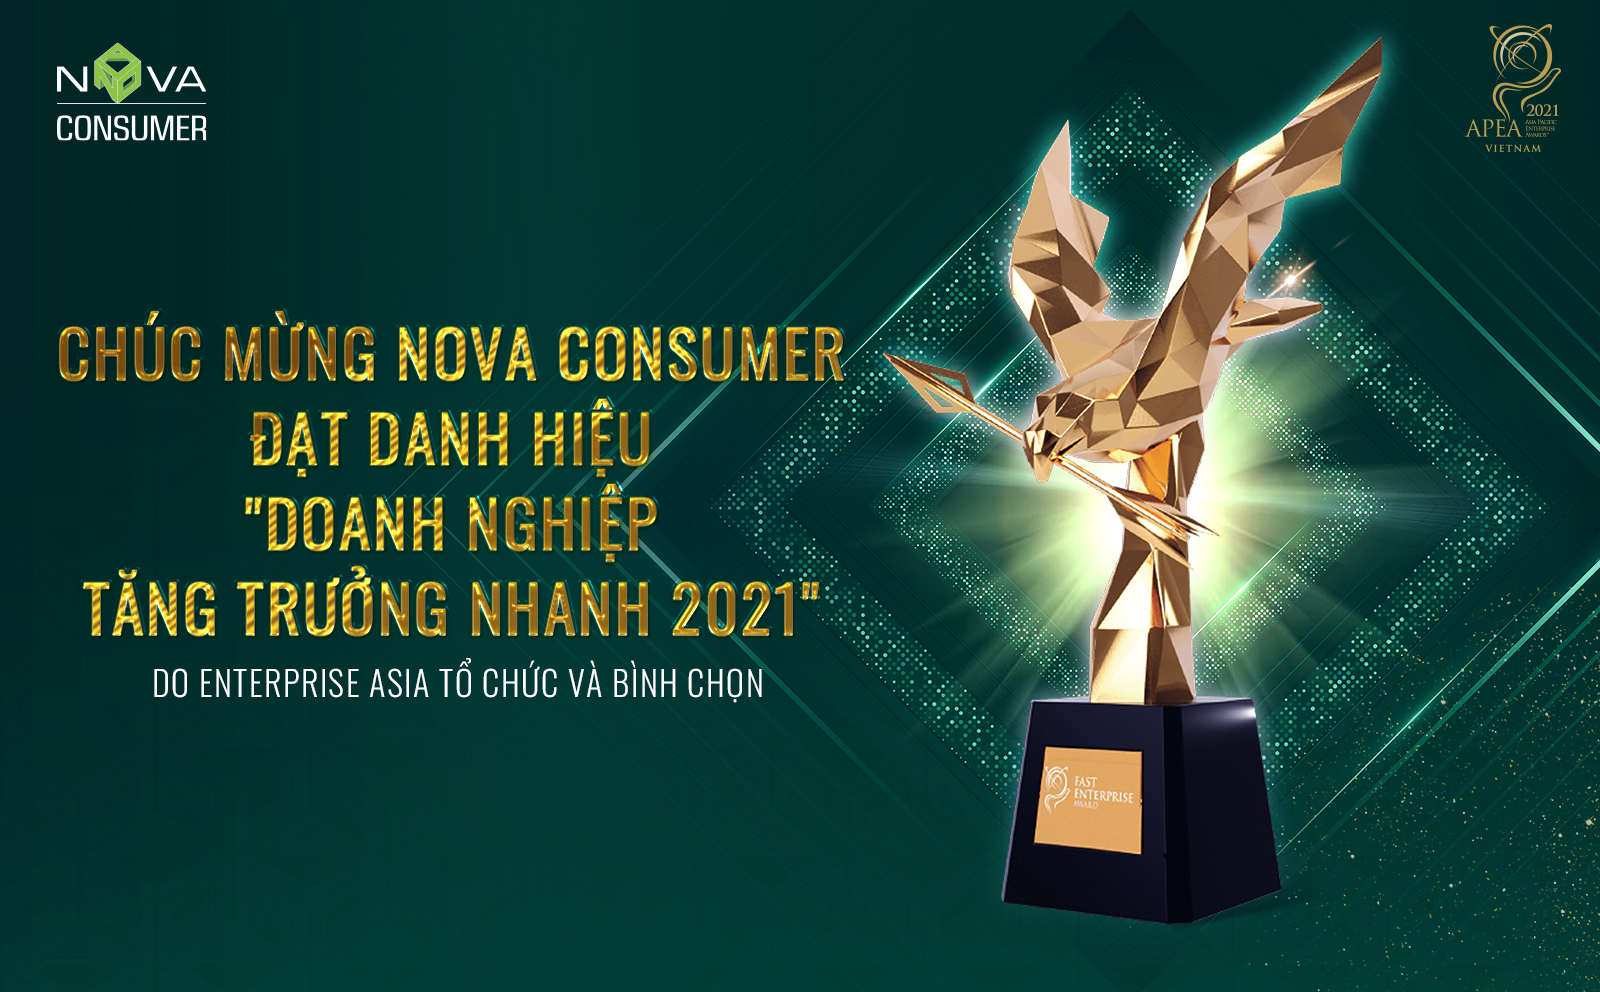 Nova Consumer được Enterprise Asia vinh danh là một trong những “Doanh nghiệp tăng trưởng nhanh 2021”